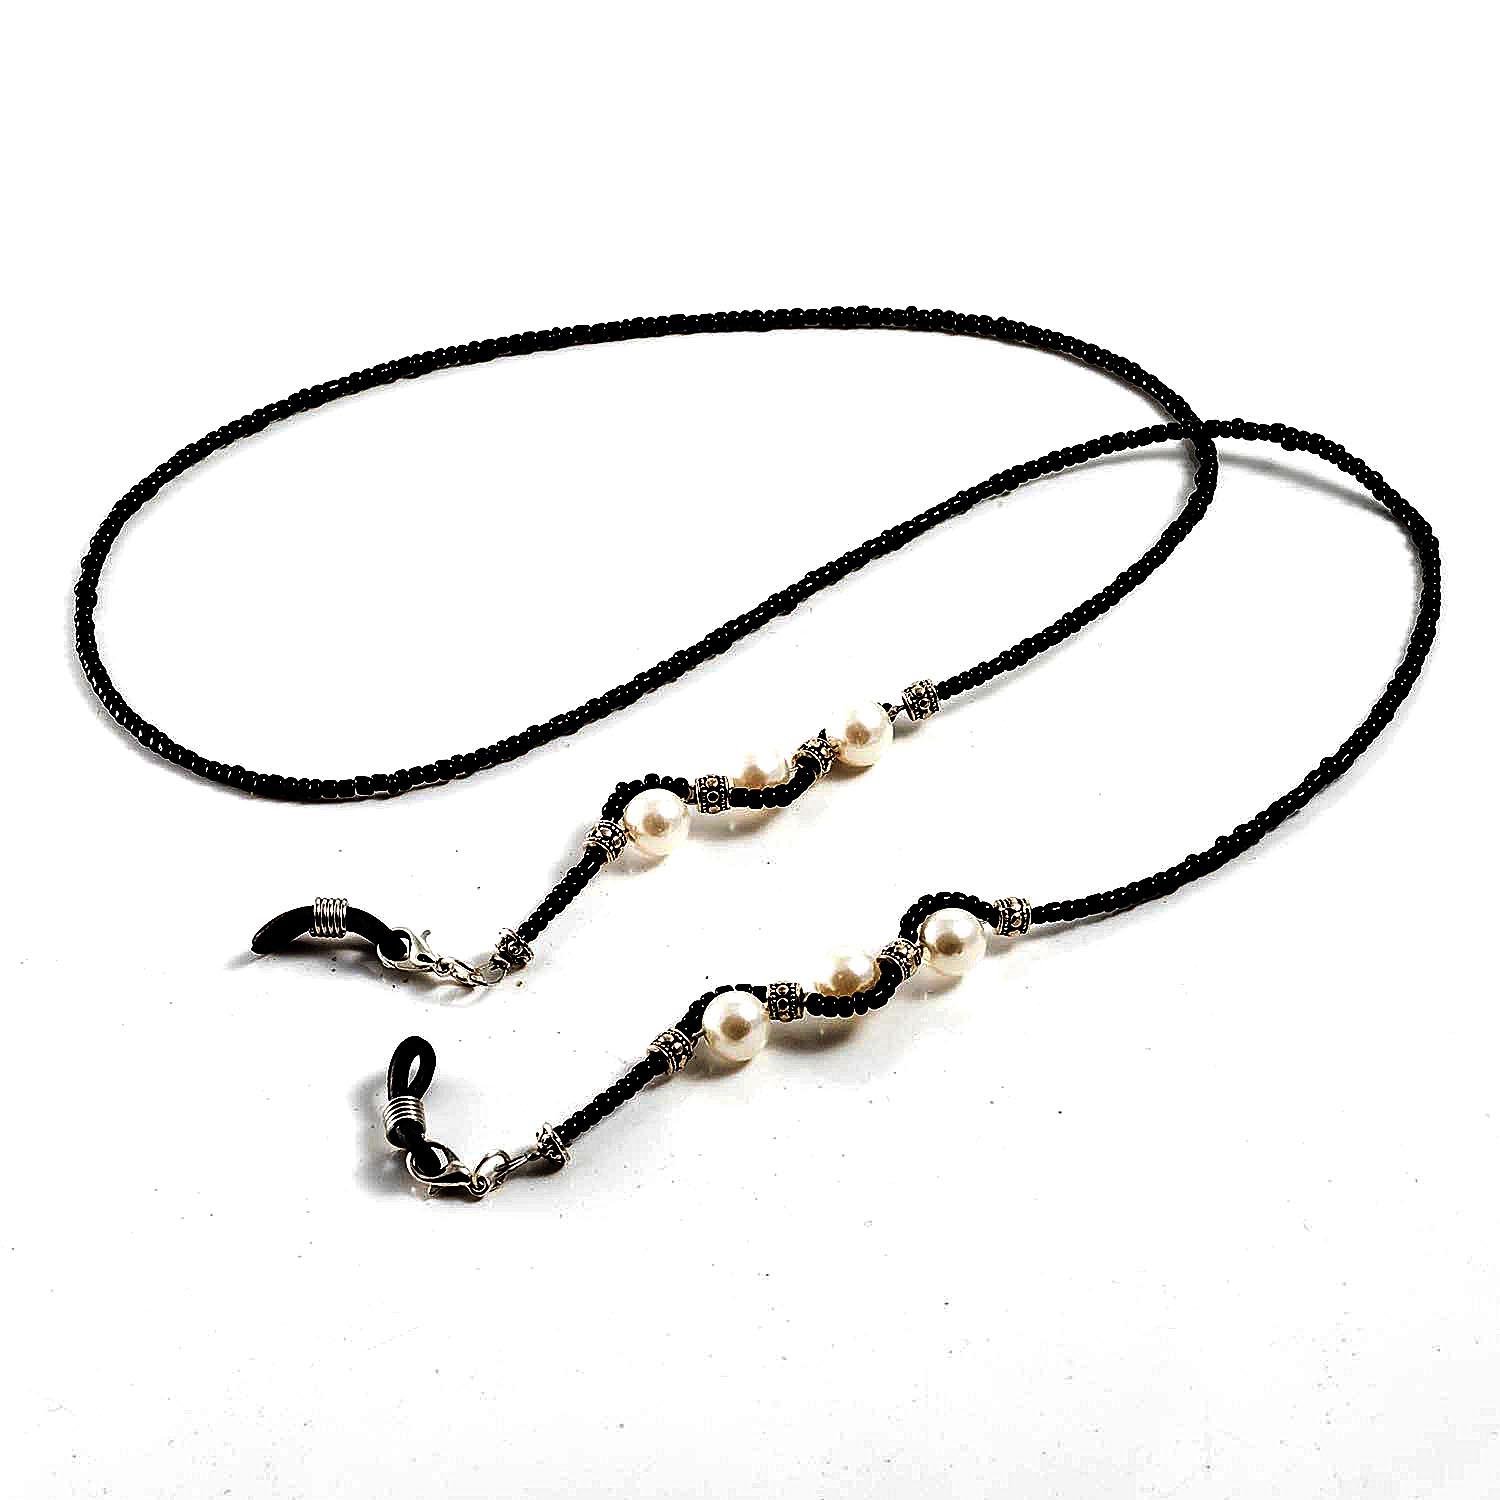 Cordón para gafas cuentas negras decorado con bolitas blancas efecto perla hecho a mano